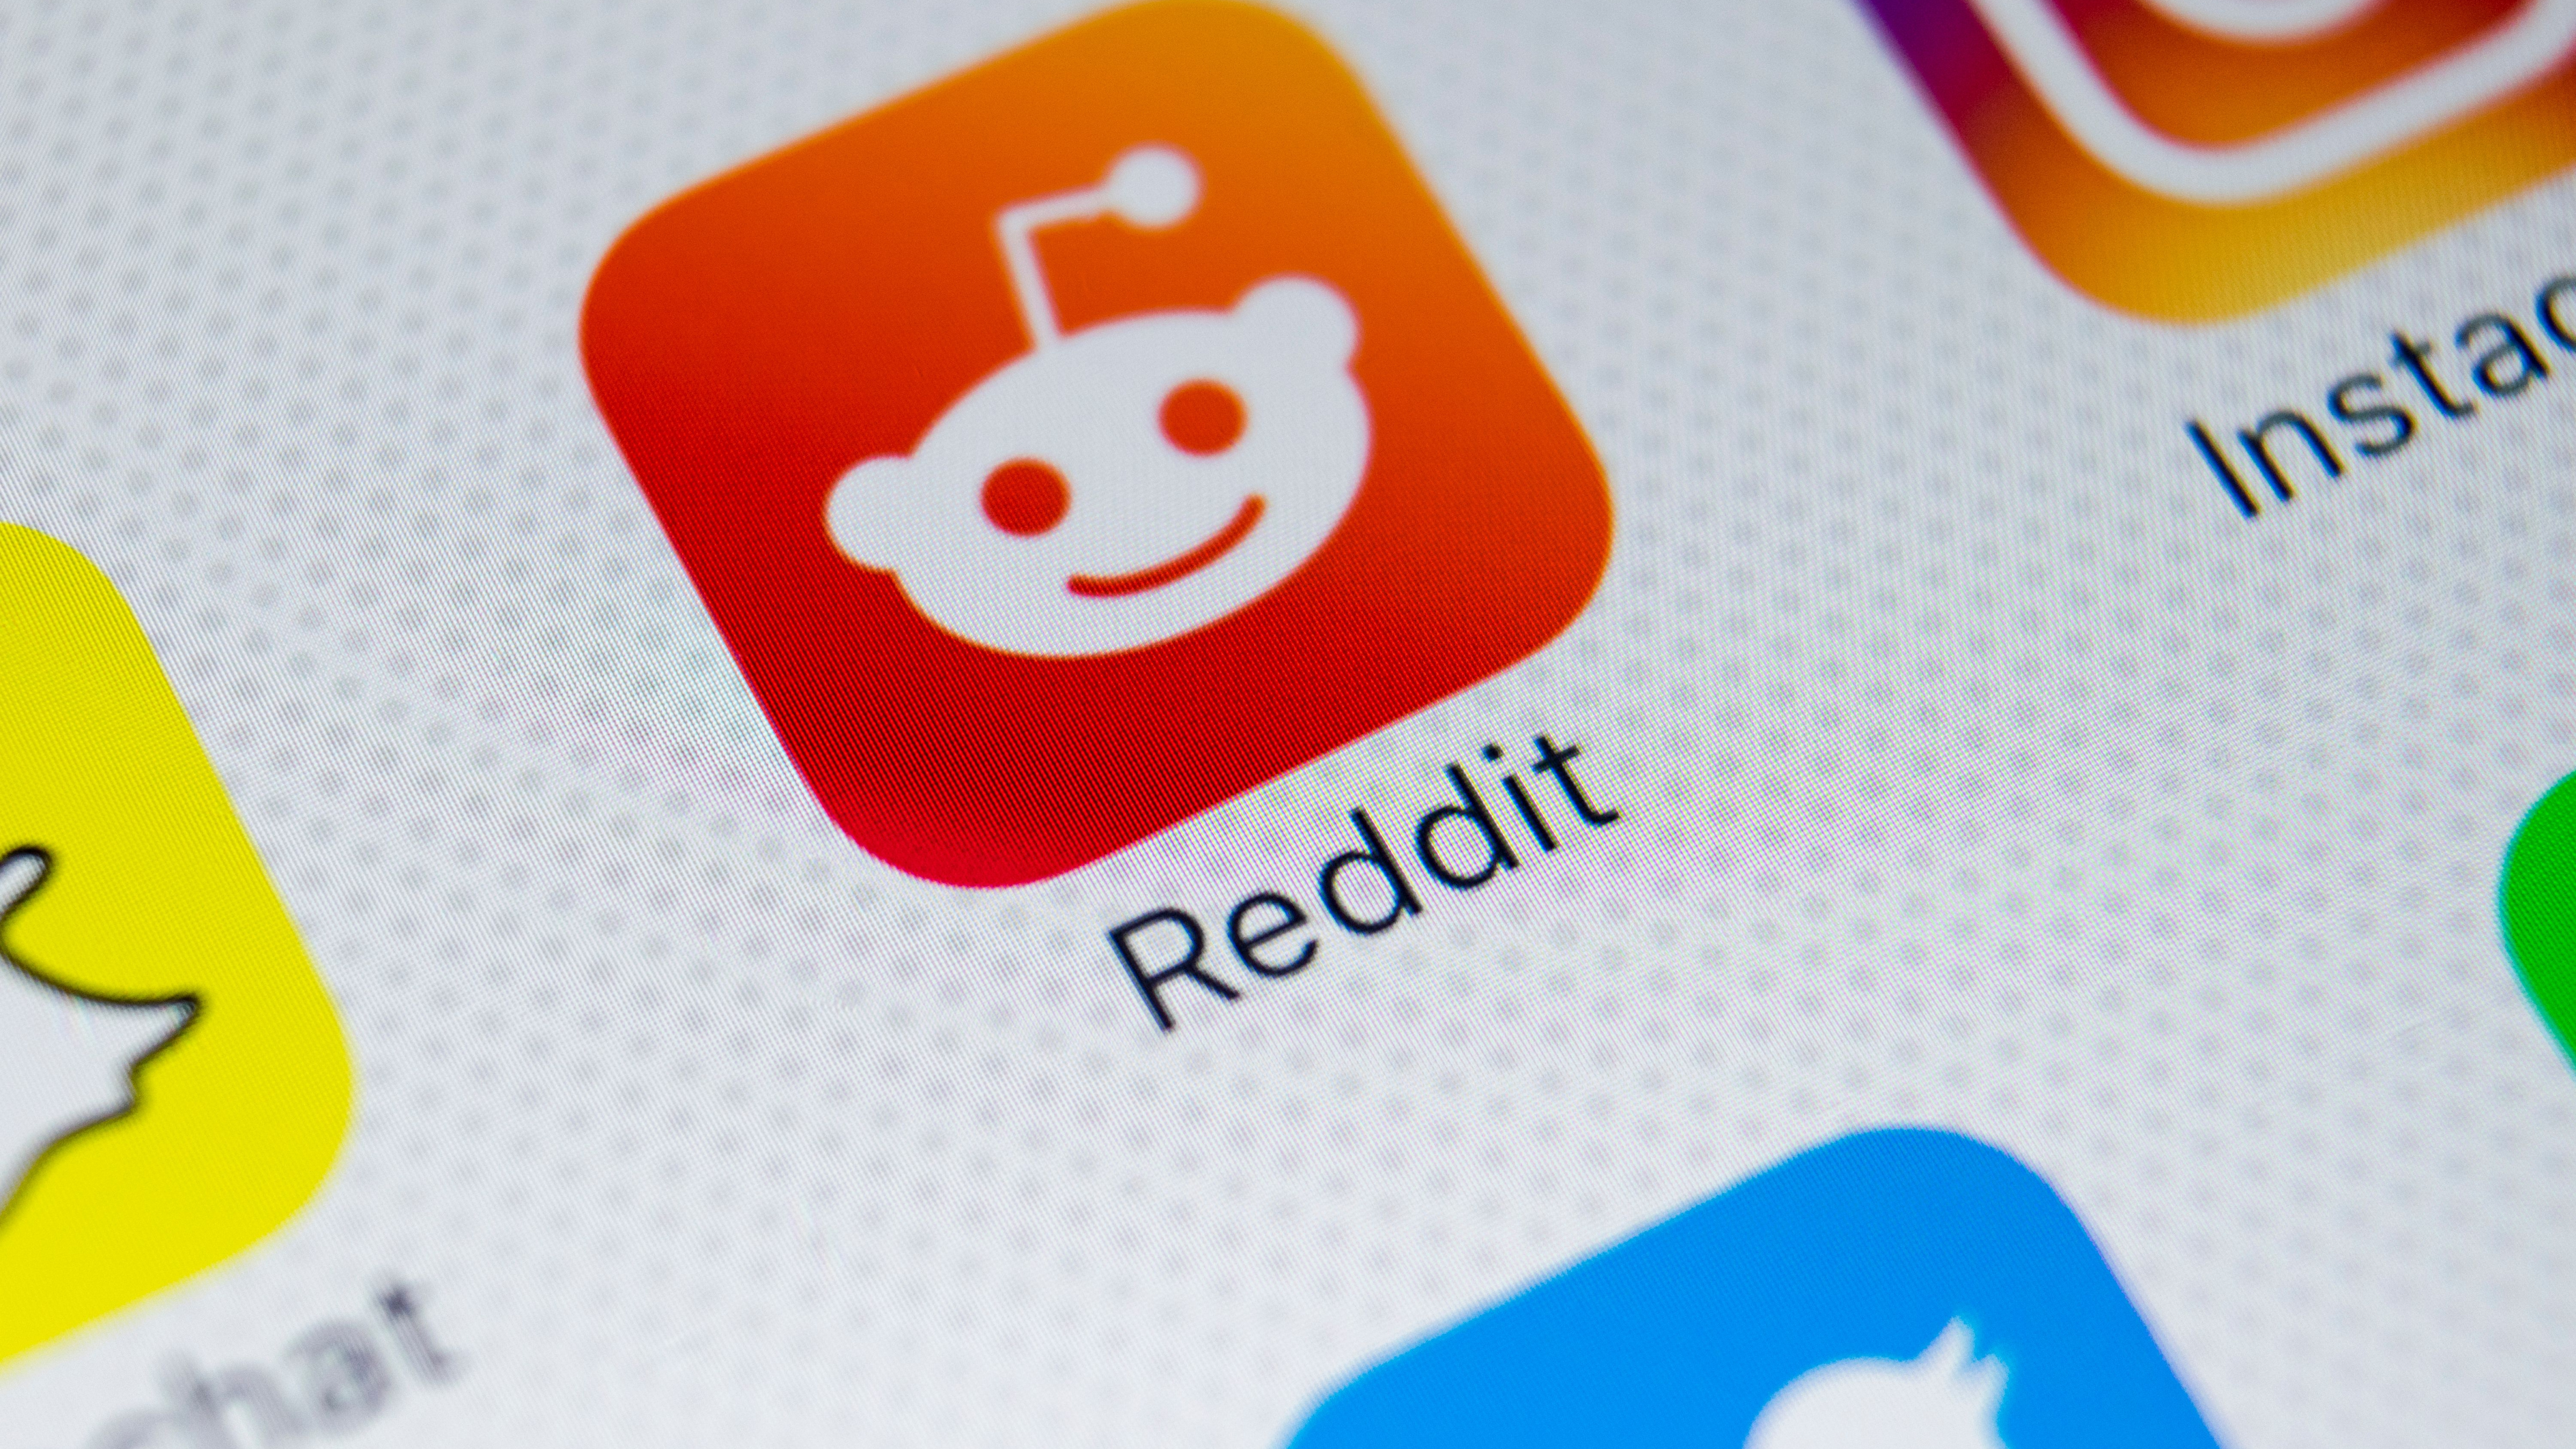 Icône de l'application Reddit sur l'écran du smartphone Apple iPhone X en gros plan.  Icône de l'application Reddit.  Reddit est un réseau de médias sociaux en ligne.